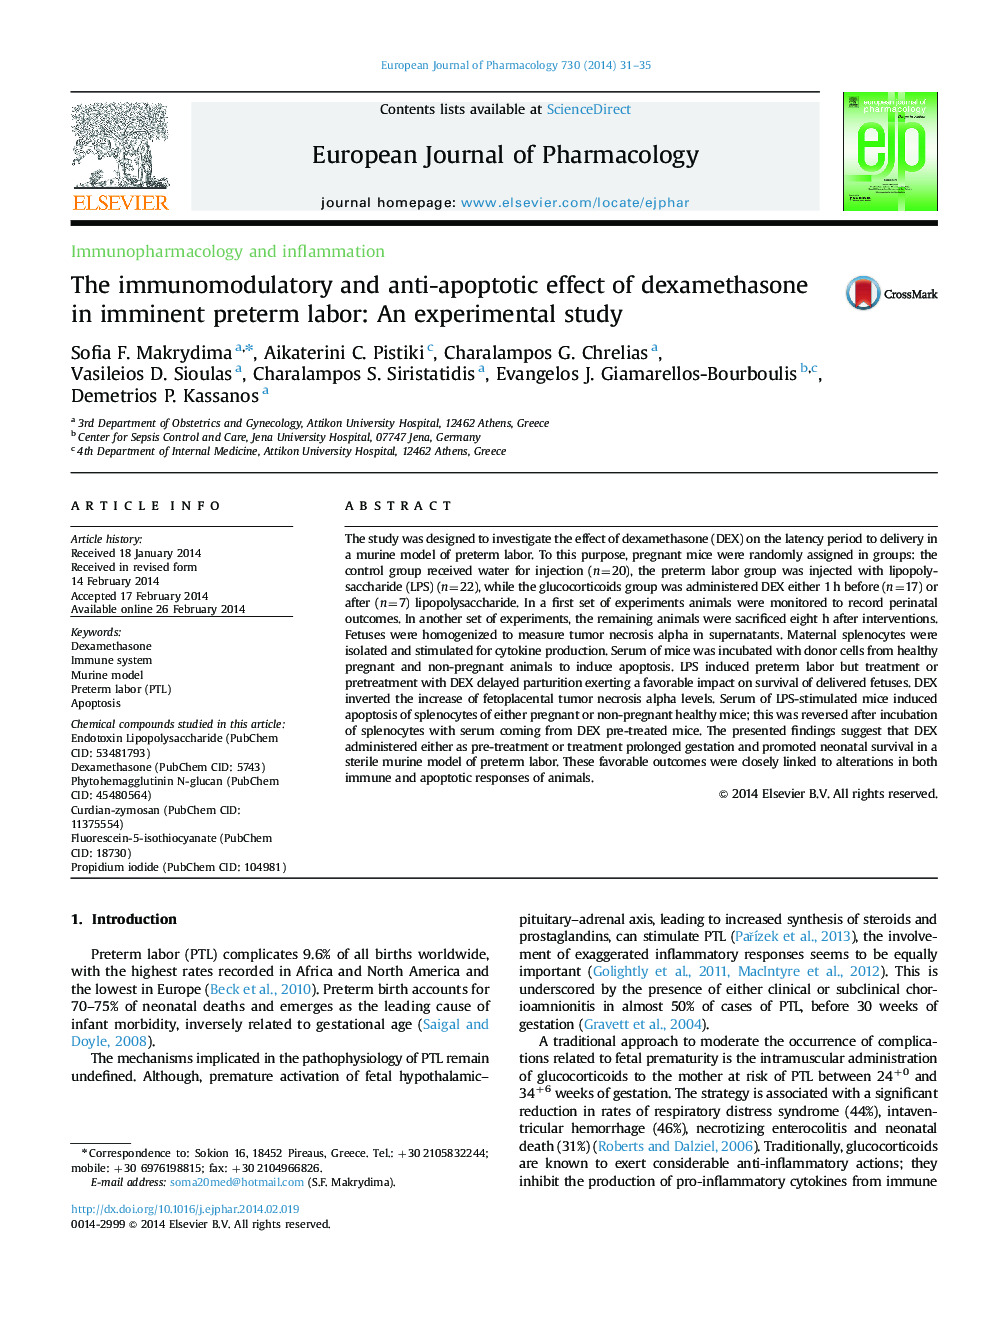 اثرات ایمن سازی و ضد آپوپتوزی دگزامتازون در زایمان پیش از قاعدگی: یک مطالعه تجربی 